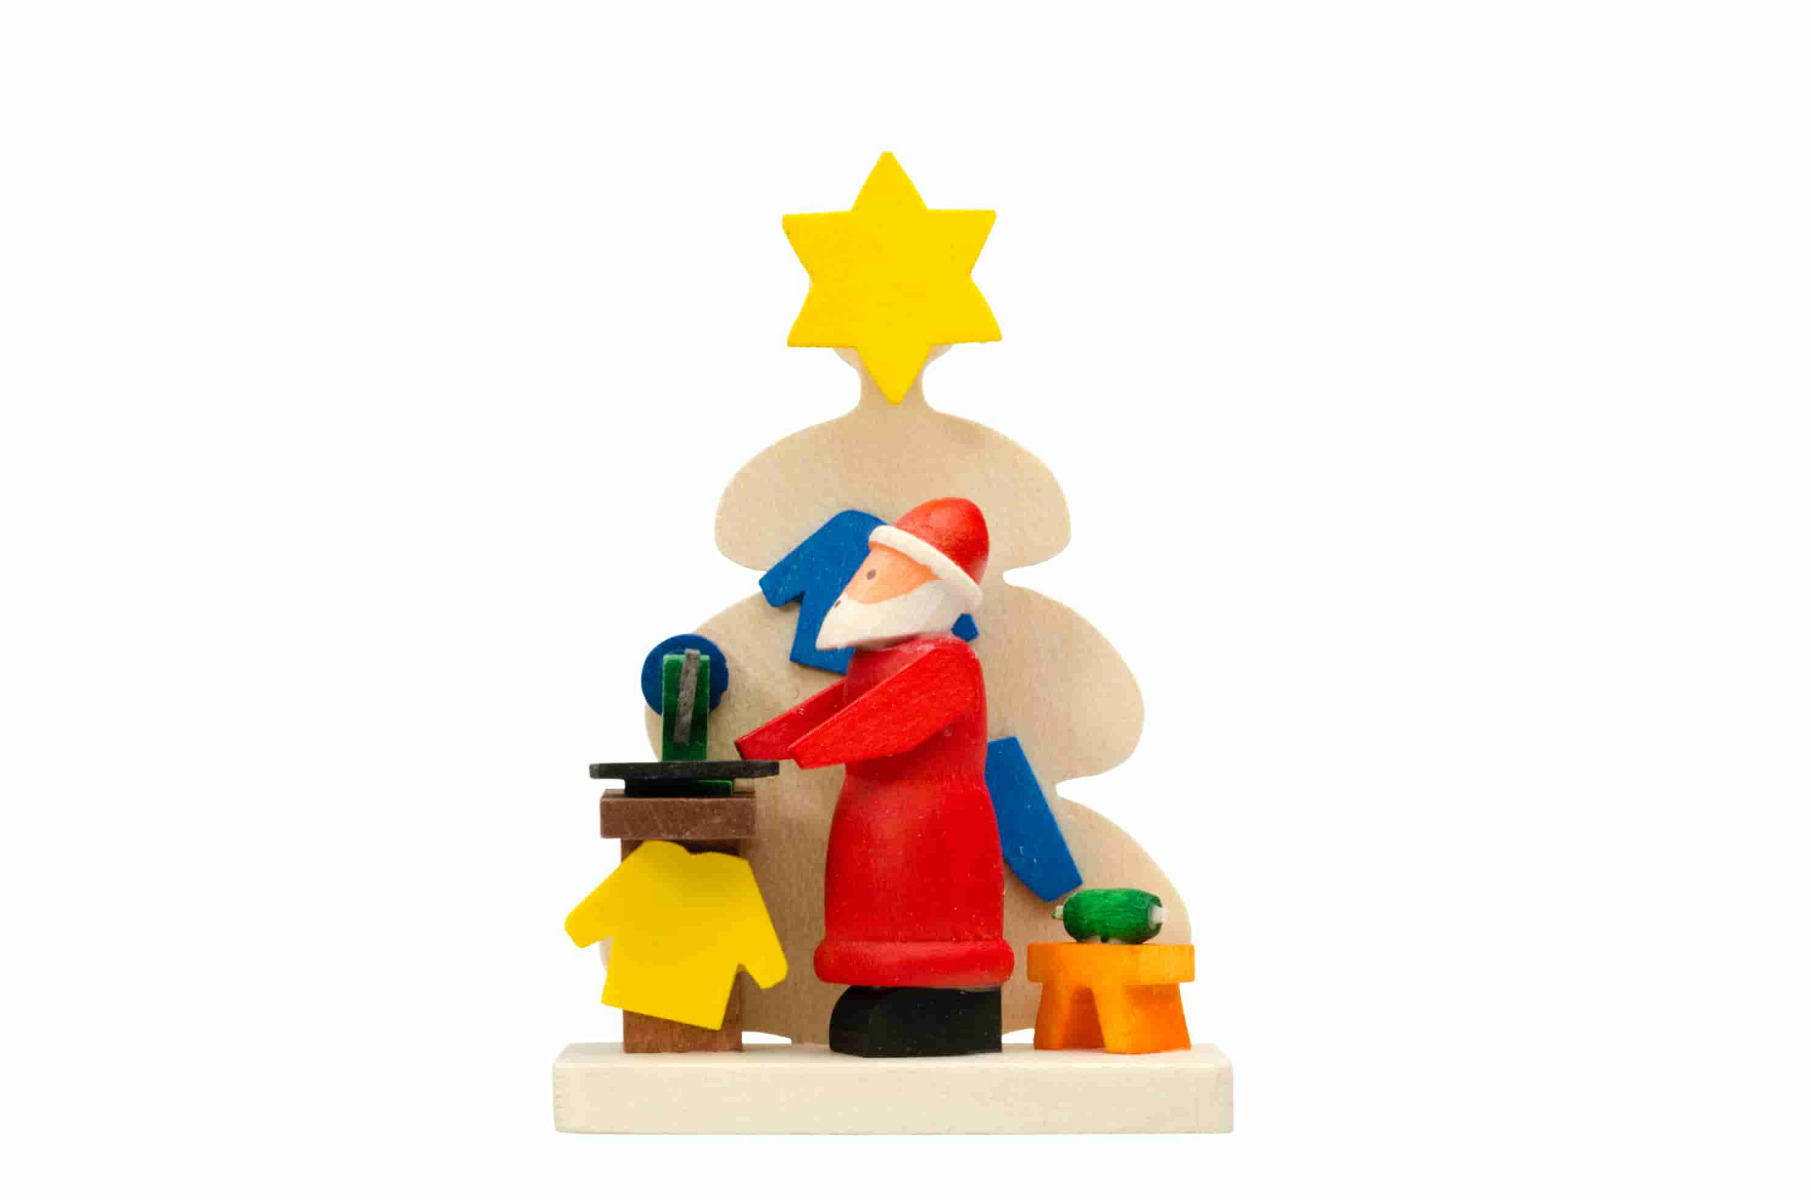 Baum-Weihnachtsmann mit Nähmaschine als Baumschmuck